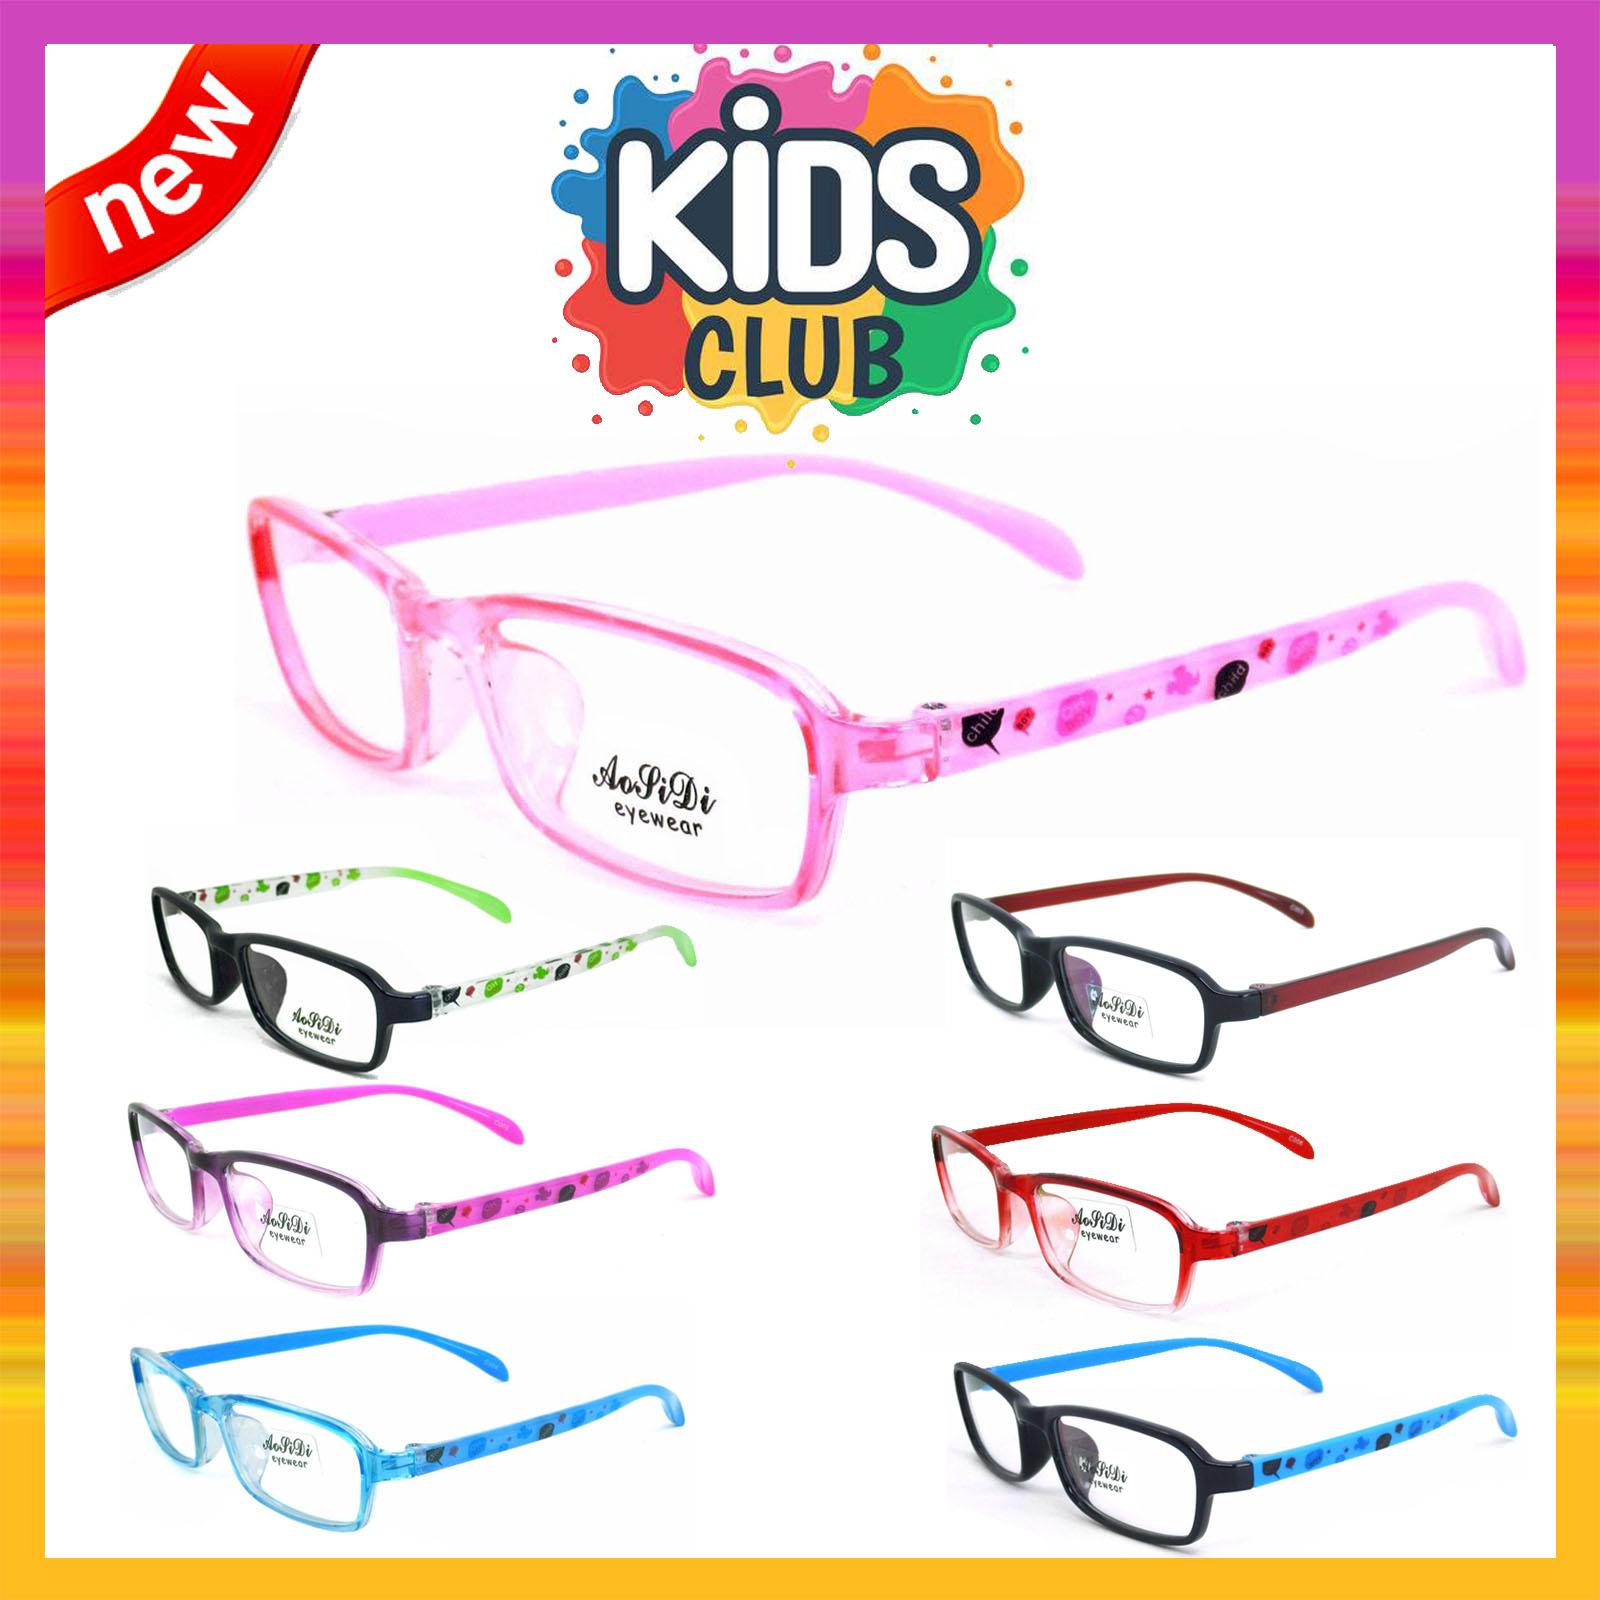 แว่นตาเกาหลีเด็ก Fashion Korea Children แว่นตาเด็ก รุ่น 1613 กรอบแว่นตาเด็ก Rectangle ทรงสี่เหลี่ยมผืนผ้า Eyeglass baby frame ( สำหรับตัดเลนส์ ) วัสดุ PC เบา ขาข้อต่อ Kid leg joints Plastic Grade A material Eyewear Top Glasses